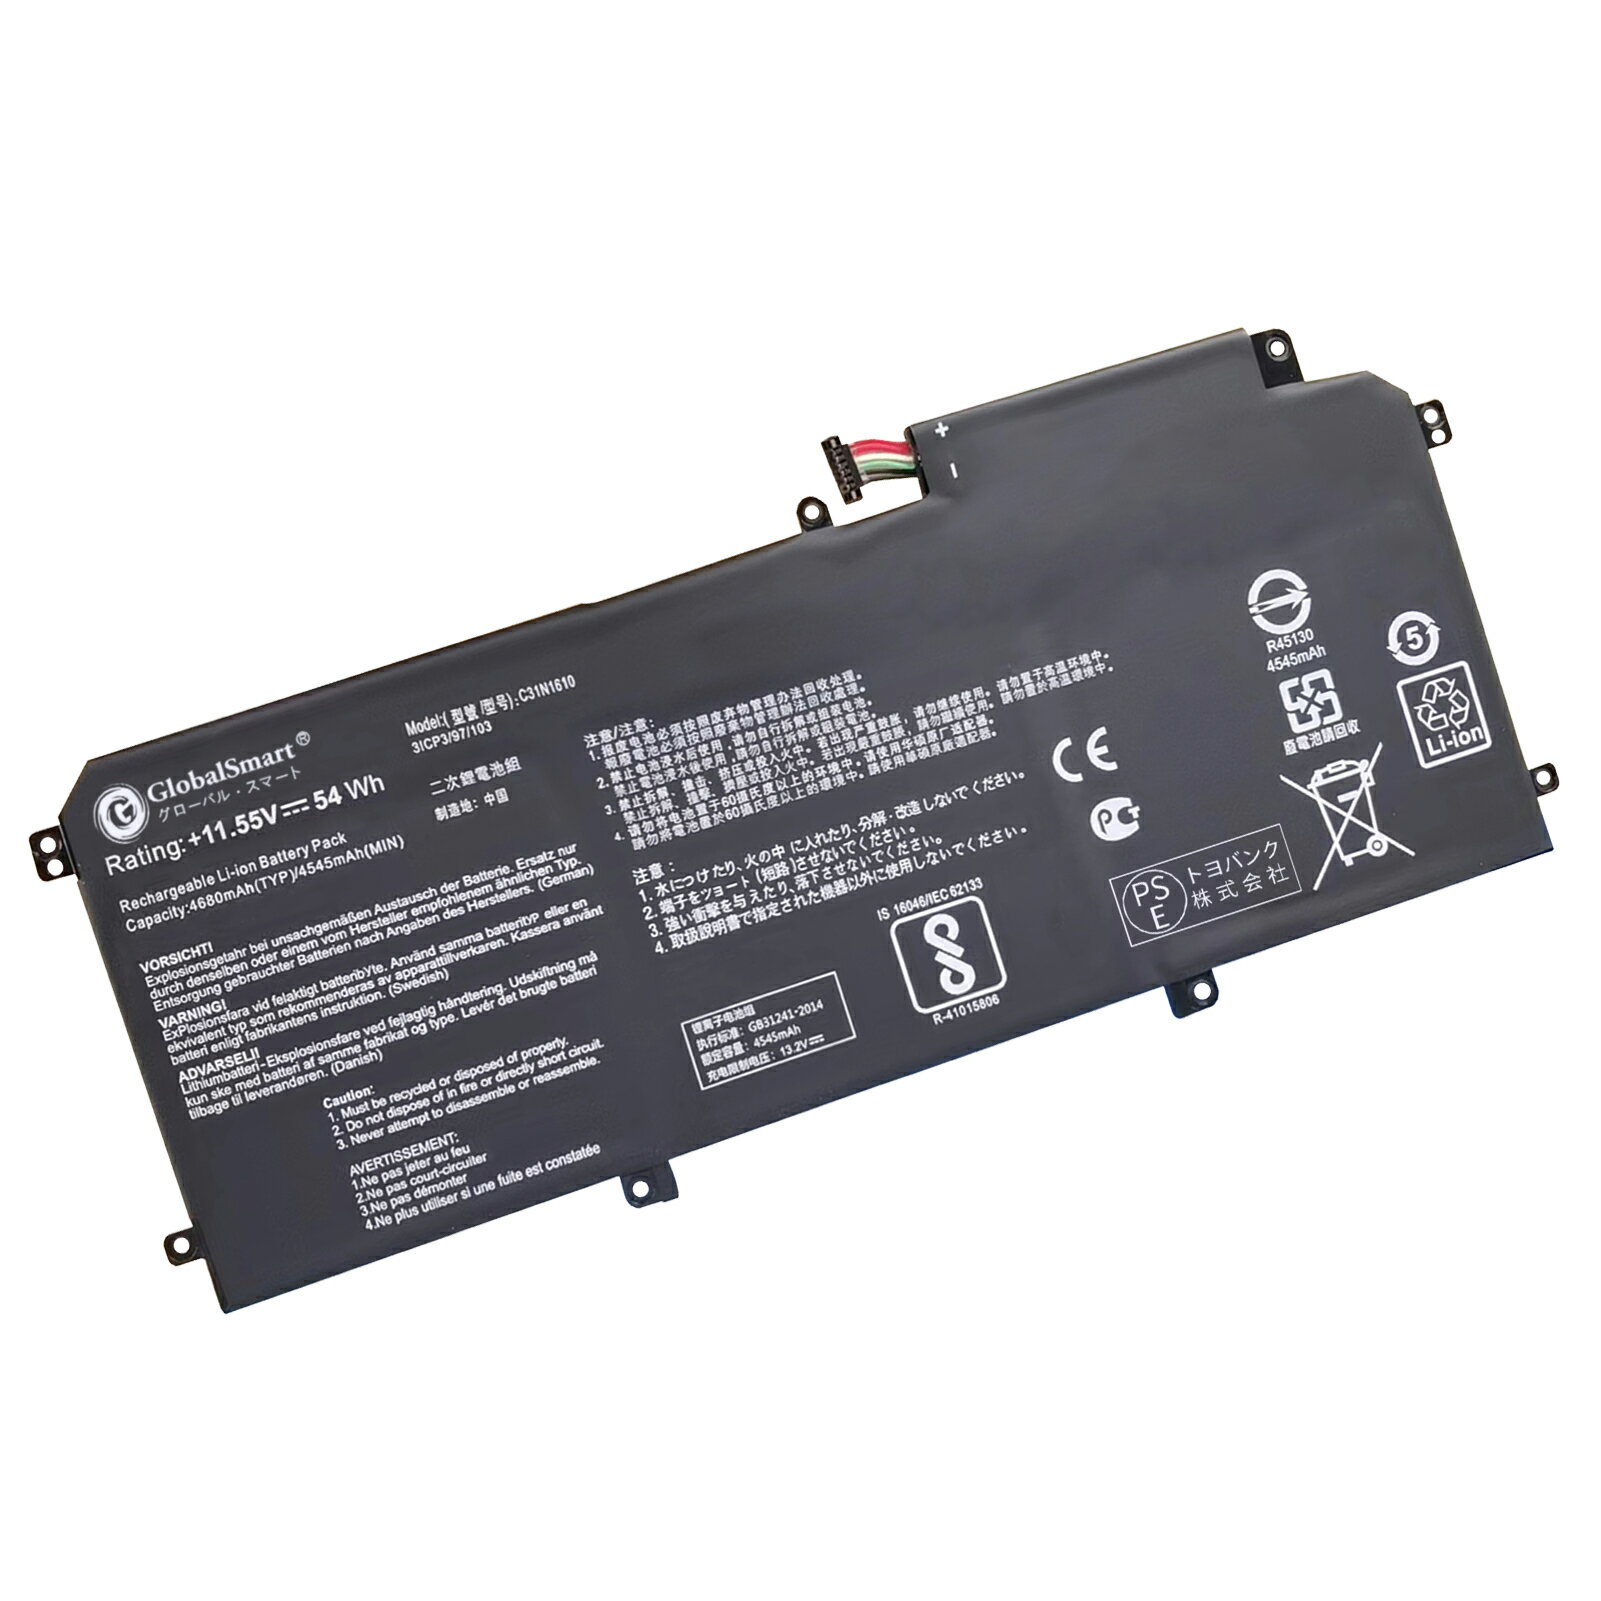 【1年保証・保証書付】ASUS UX330C WIR 交換用内蔵バッテリー 54Wh 11.55V 互換バッテリー PSE認証済製品